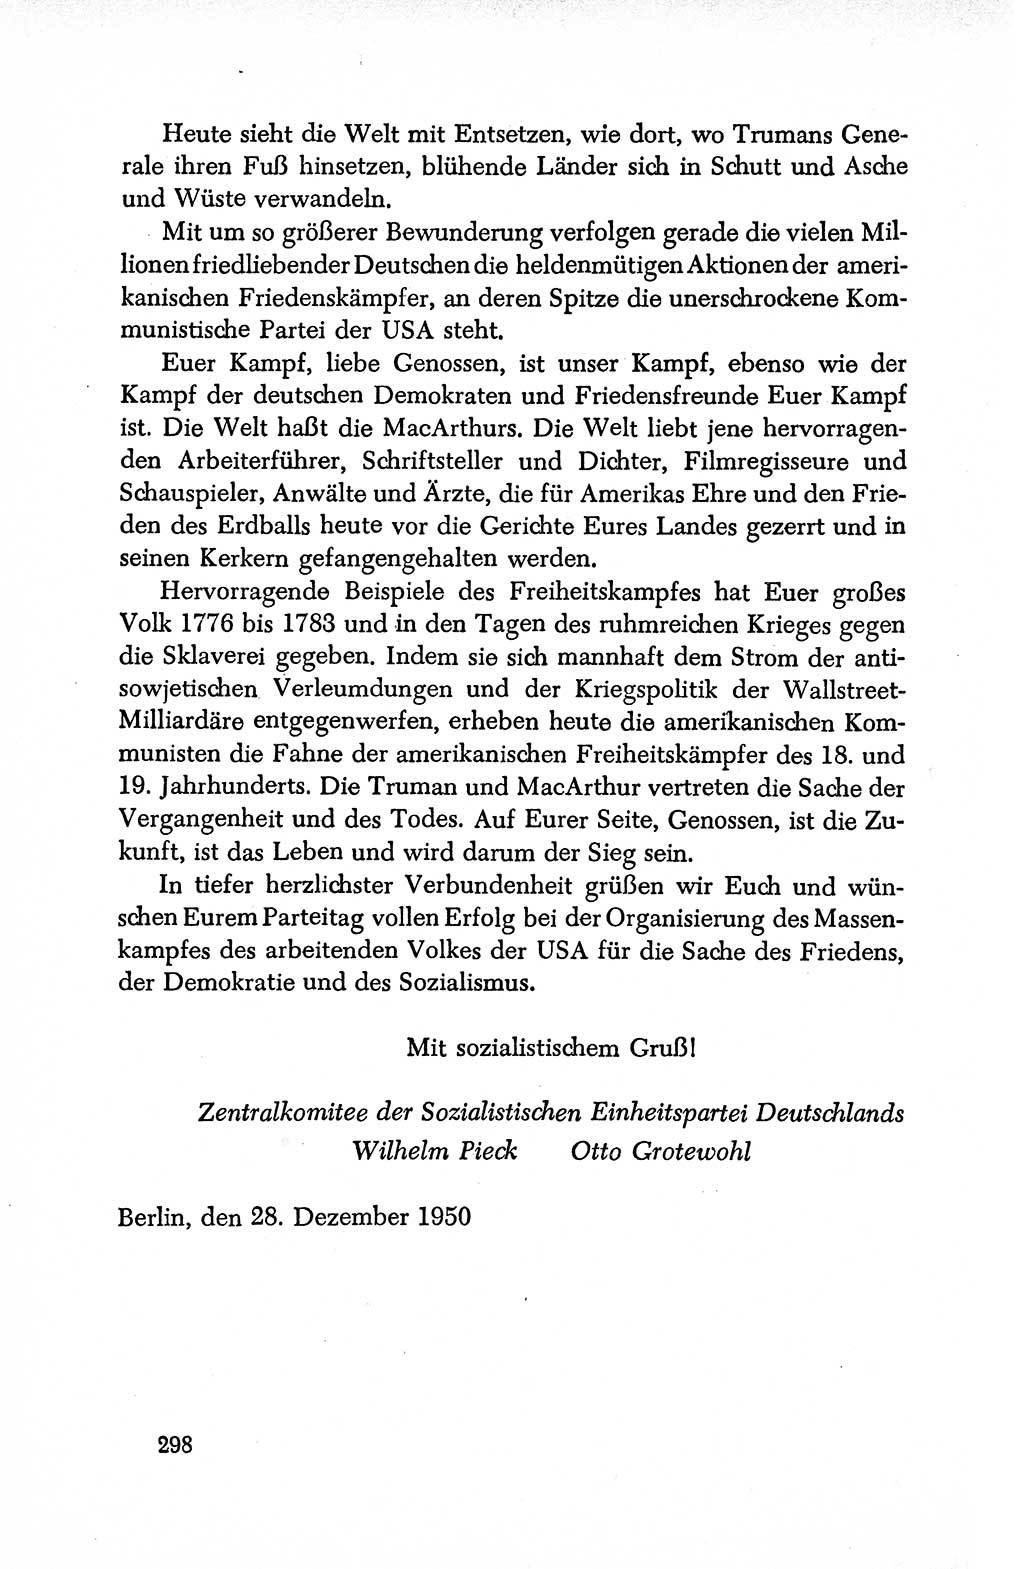 Dokumente der Sozialistischen Einheitspartei Deutschlands (SED) [Deutsche Demokratische Republik (DDR)] 1950-1952, Seite 298 (Dok. SED DDR 1950-1952, S. 298)